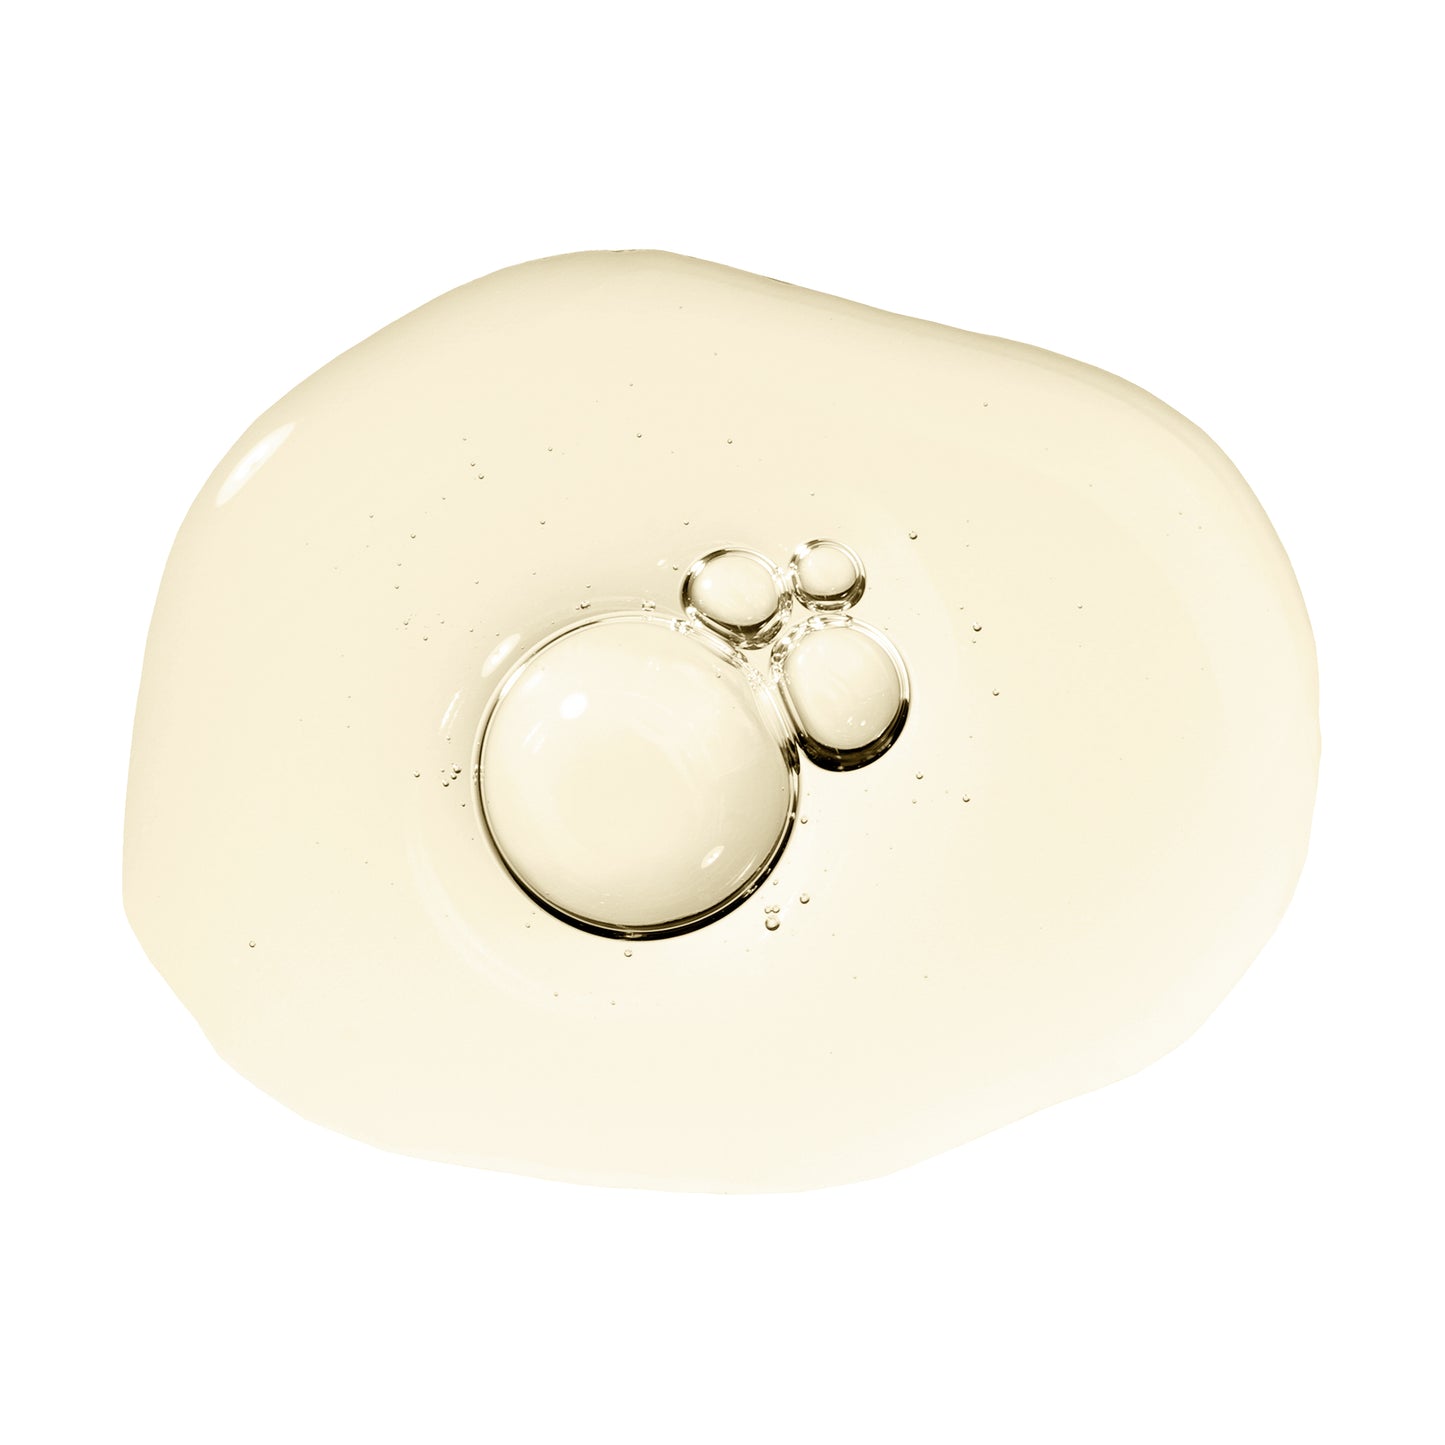 Teresa Tarmey 0.3% Retinol gel droplet image 